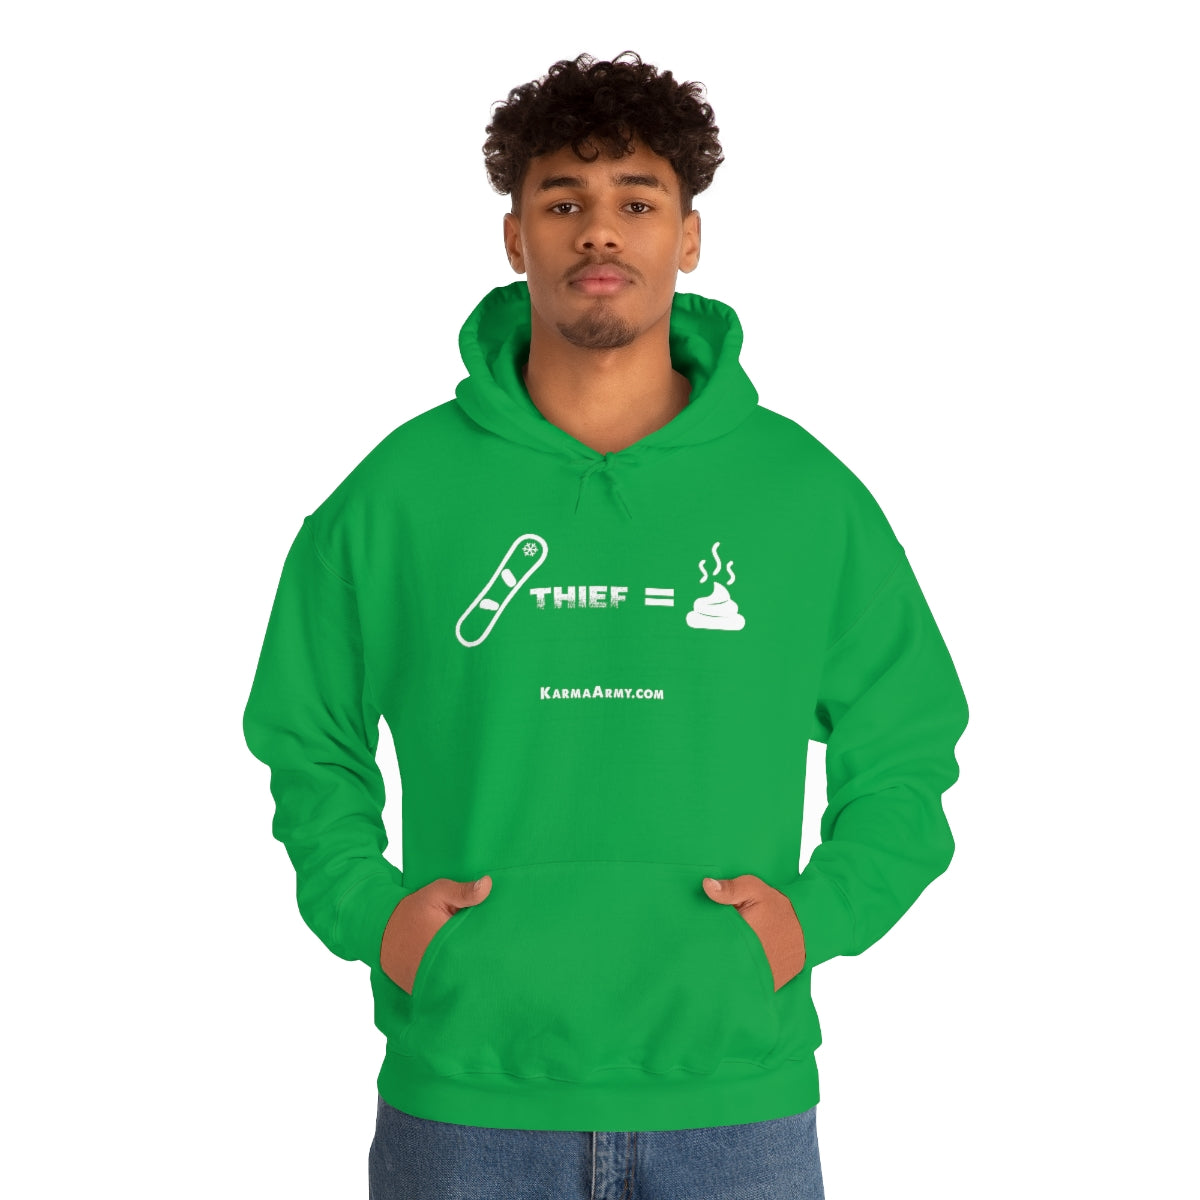 Board Thief = Poop Unisex Heavy Blend™ Hooded Sweatshirt